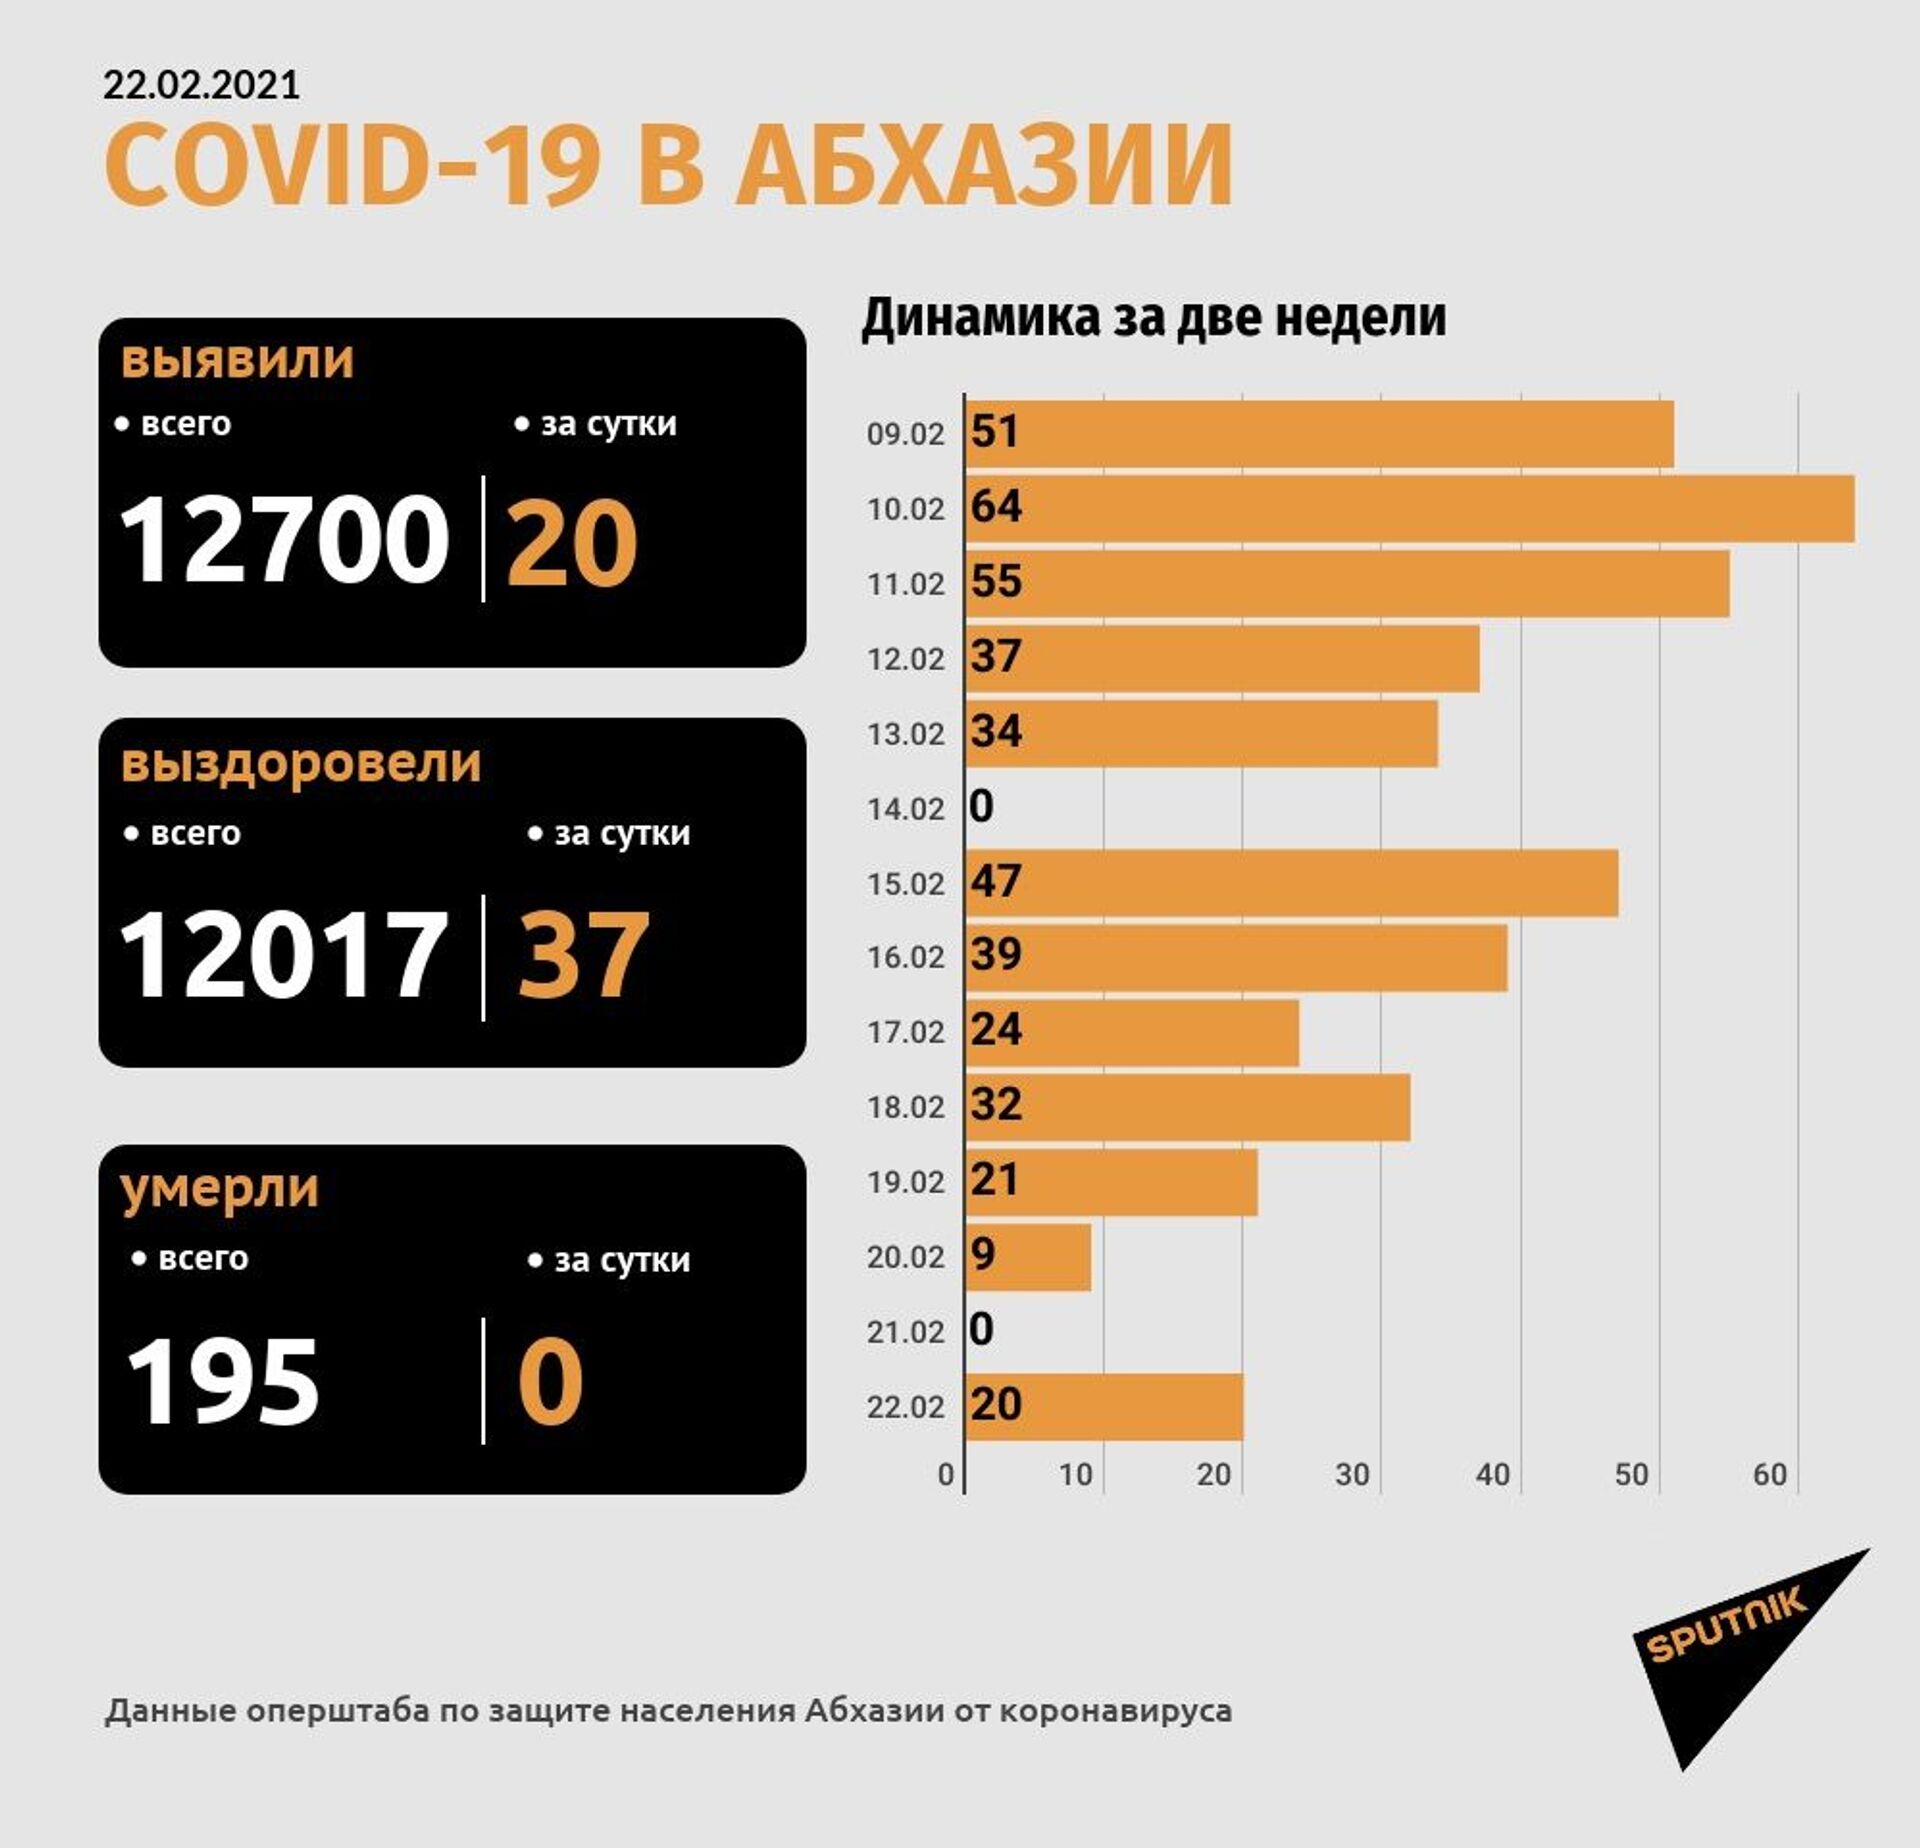 Оперштаб сообщил о 20 новых случаях коронавируса в Абхазии - Sputnik Абхазия, 1920, 22.02.2021